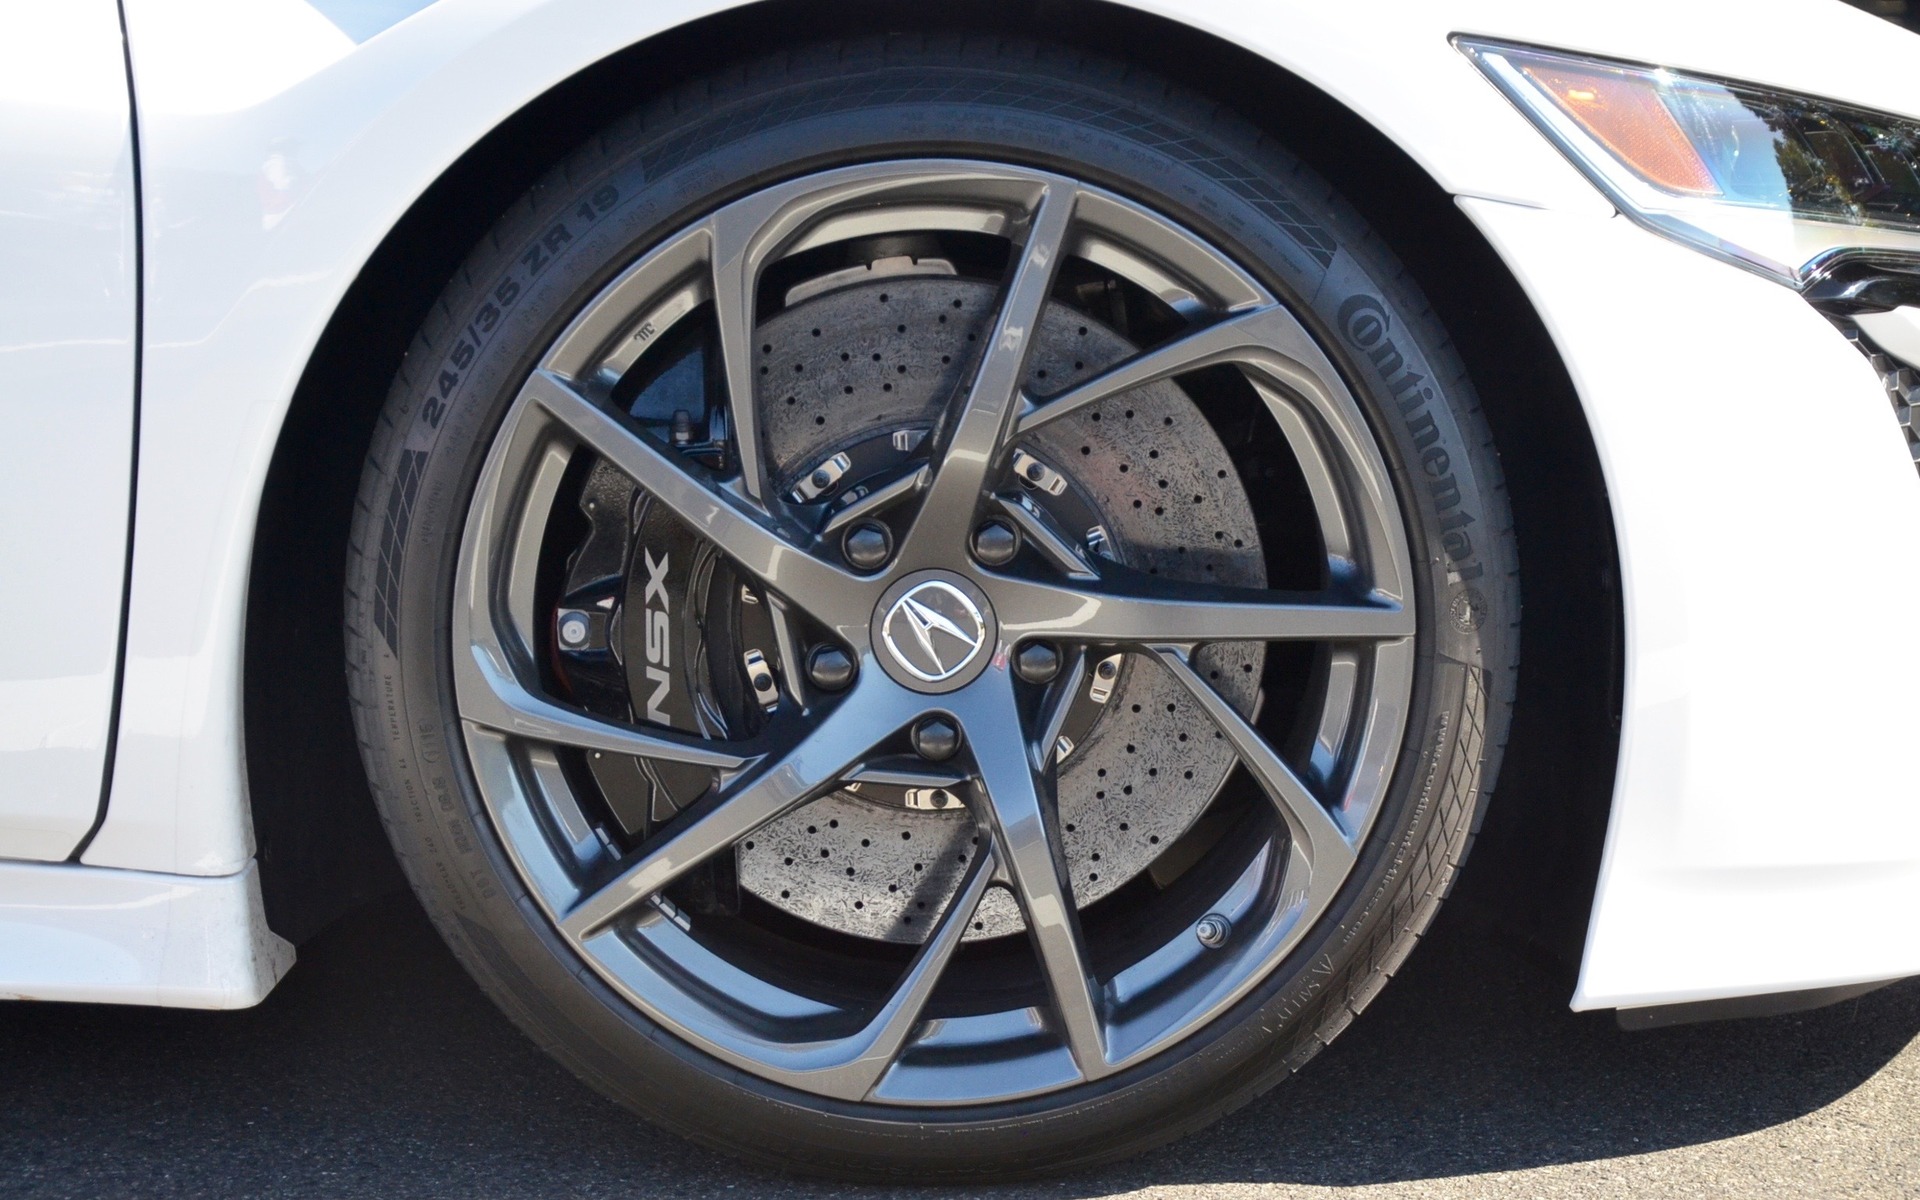 Acura NSX 2017 - Roues en alliage, freins en composite de céramique.